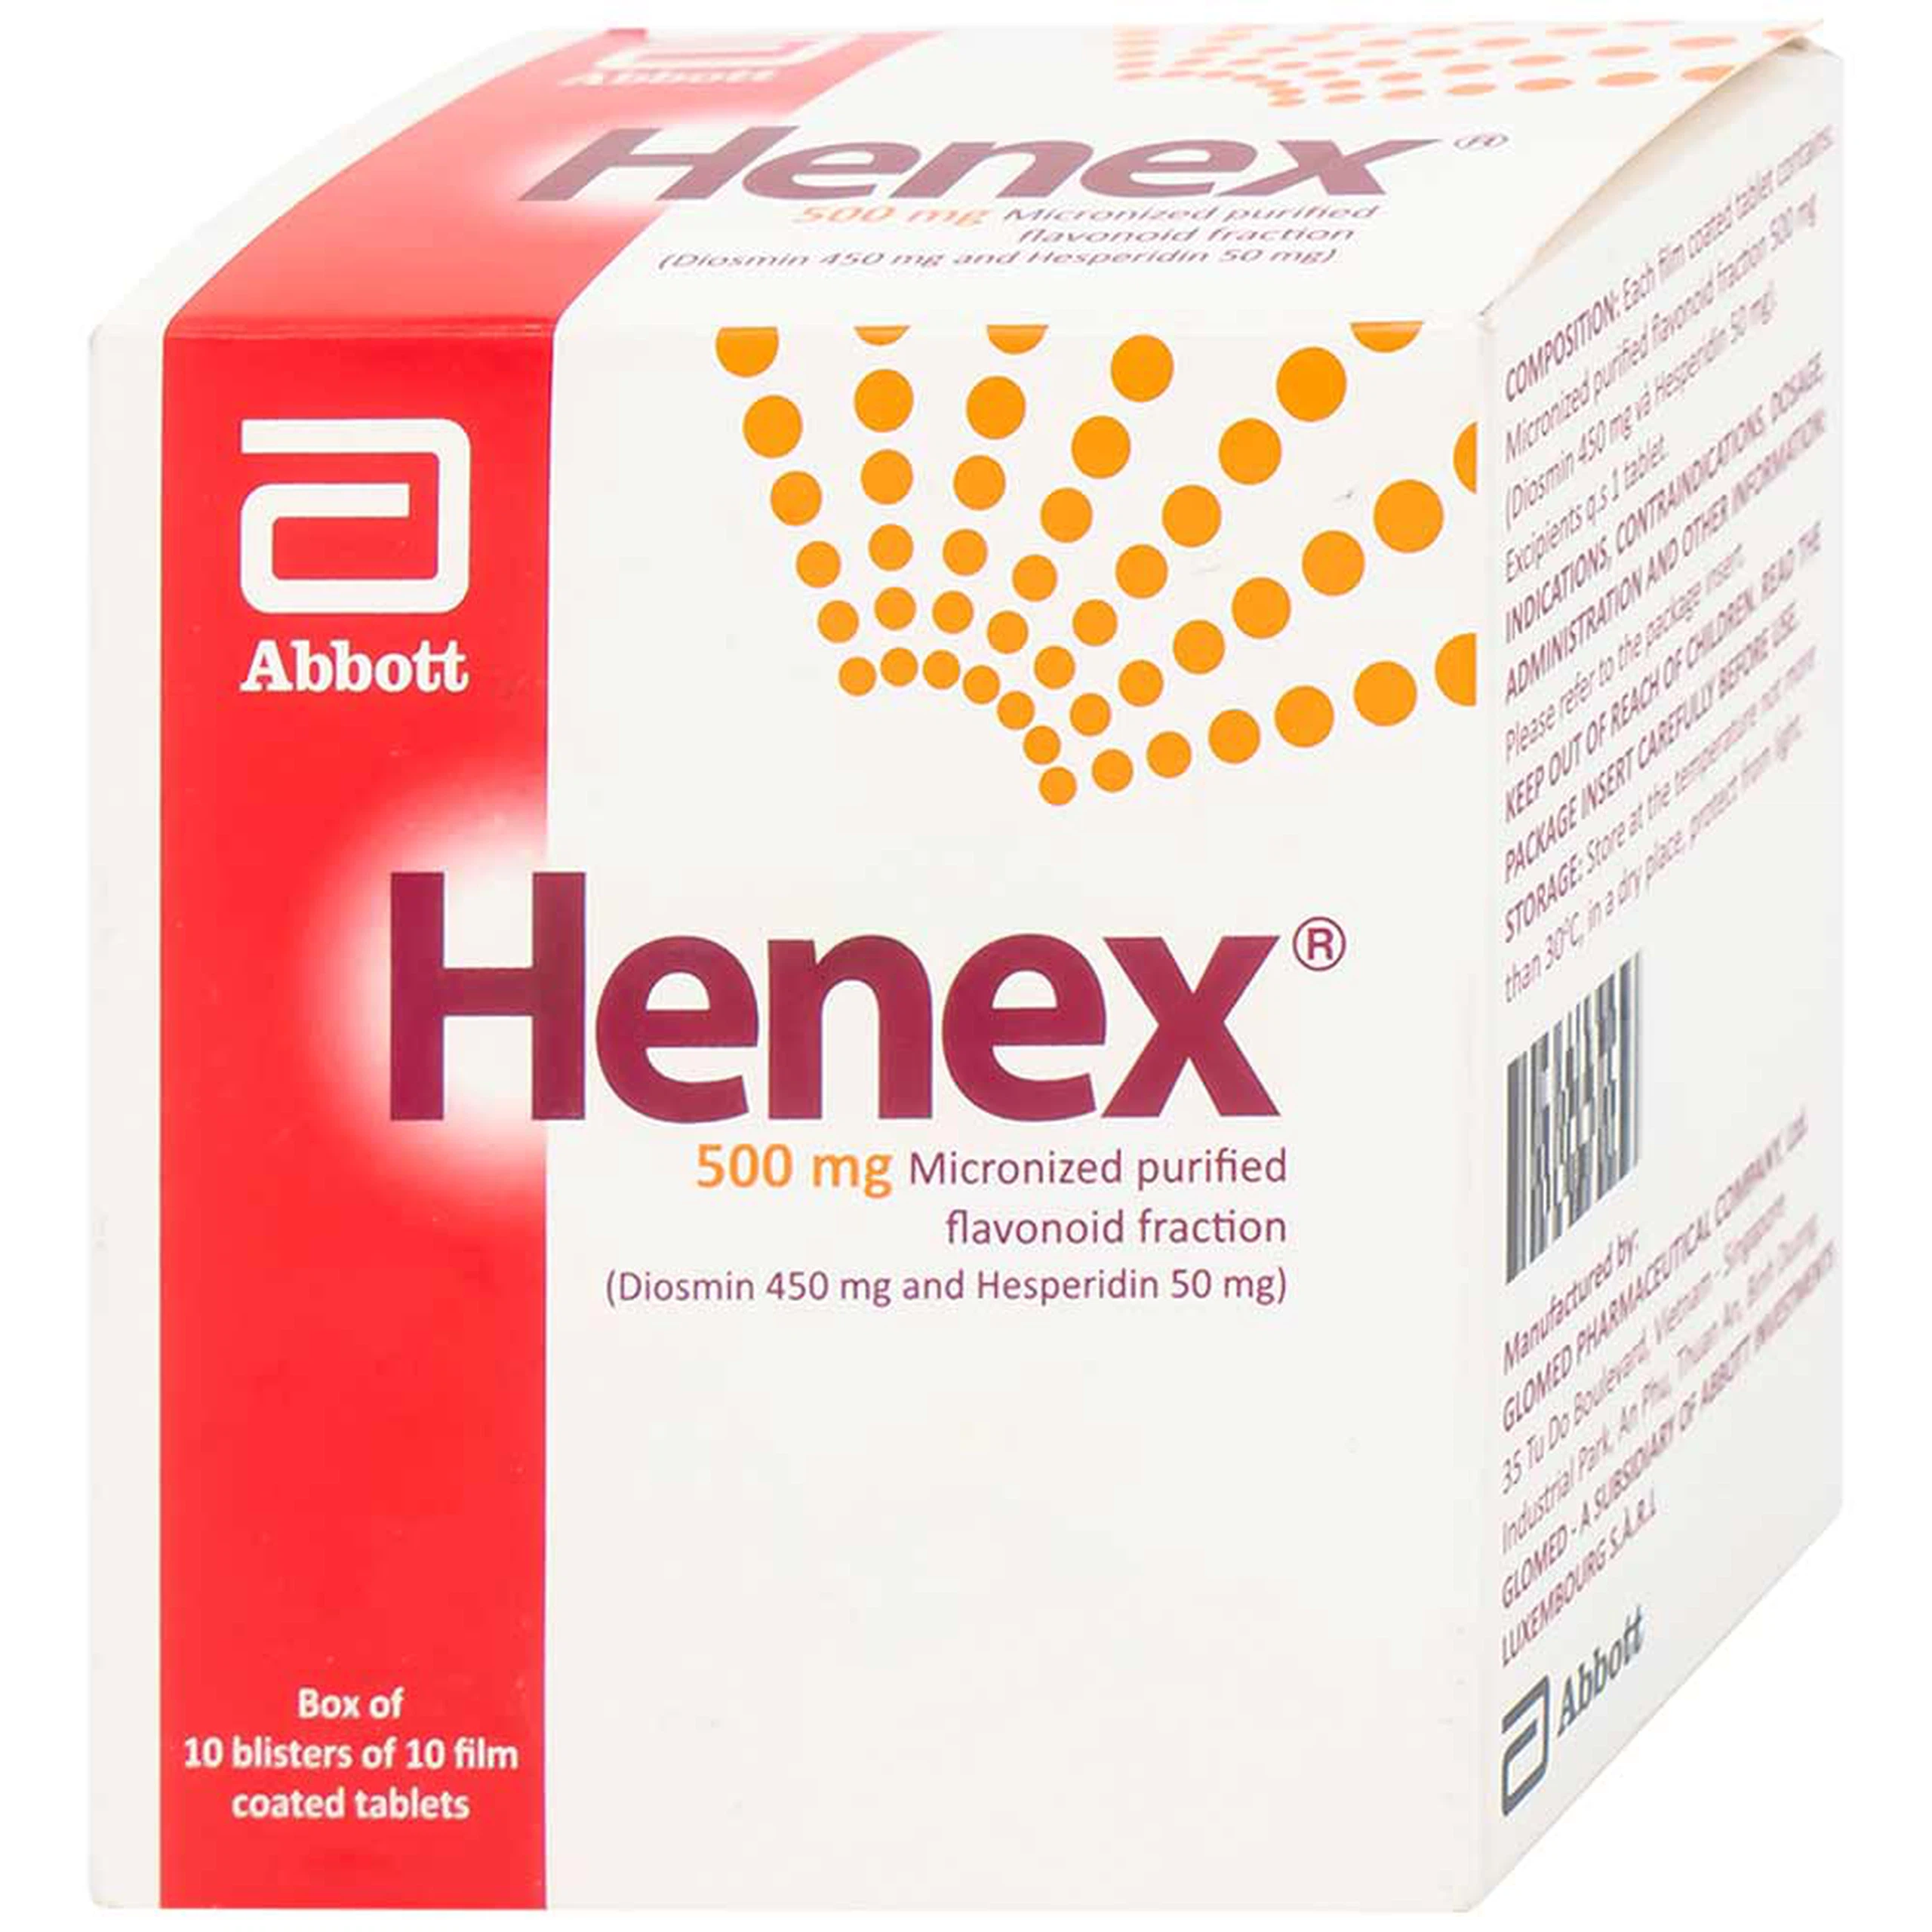 Thuốc Henex 500mg Abbott điều trị suy tĩnh mạch - mạch bạch huyết, cơn trĩ cấp (10 vỉ x 10 viên)